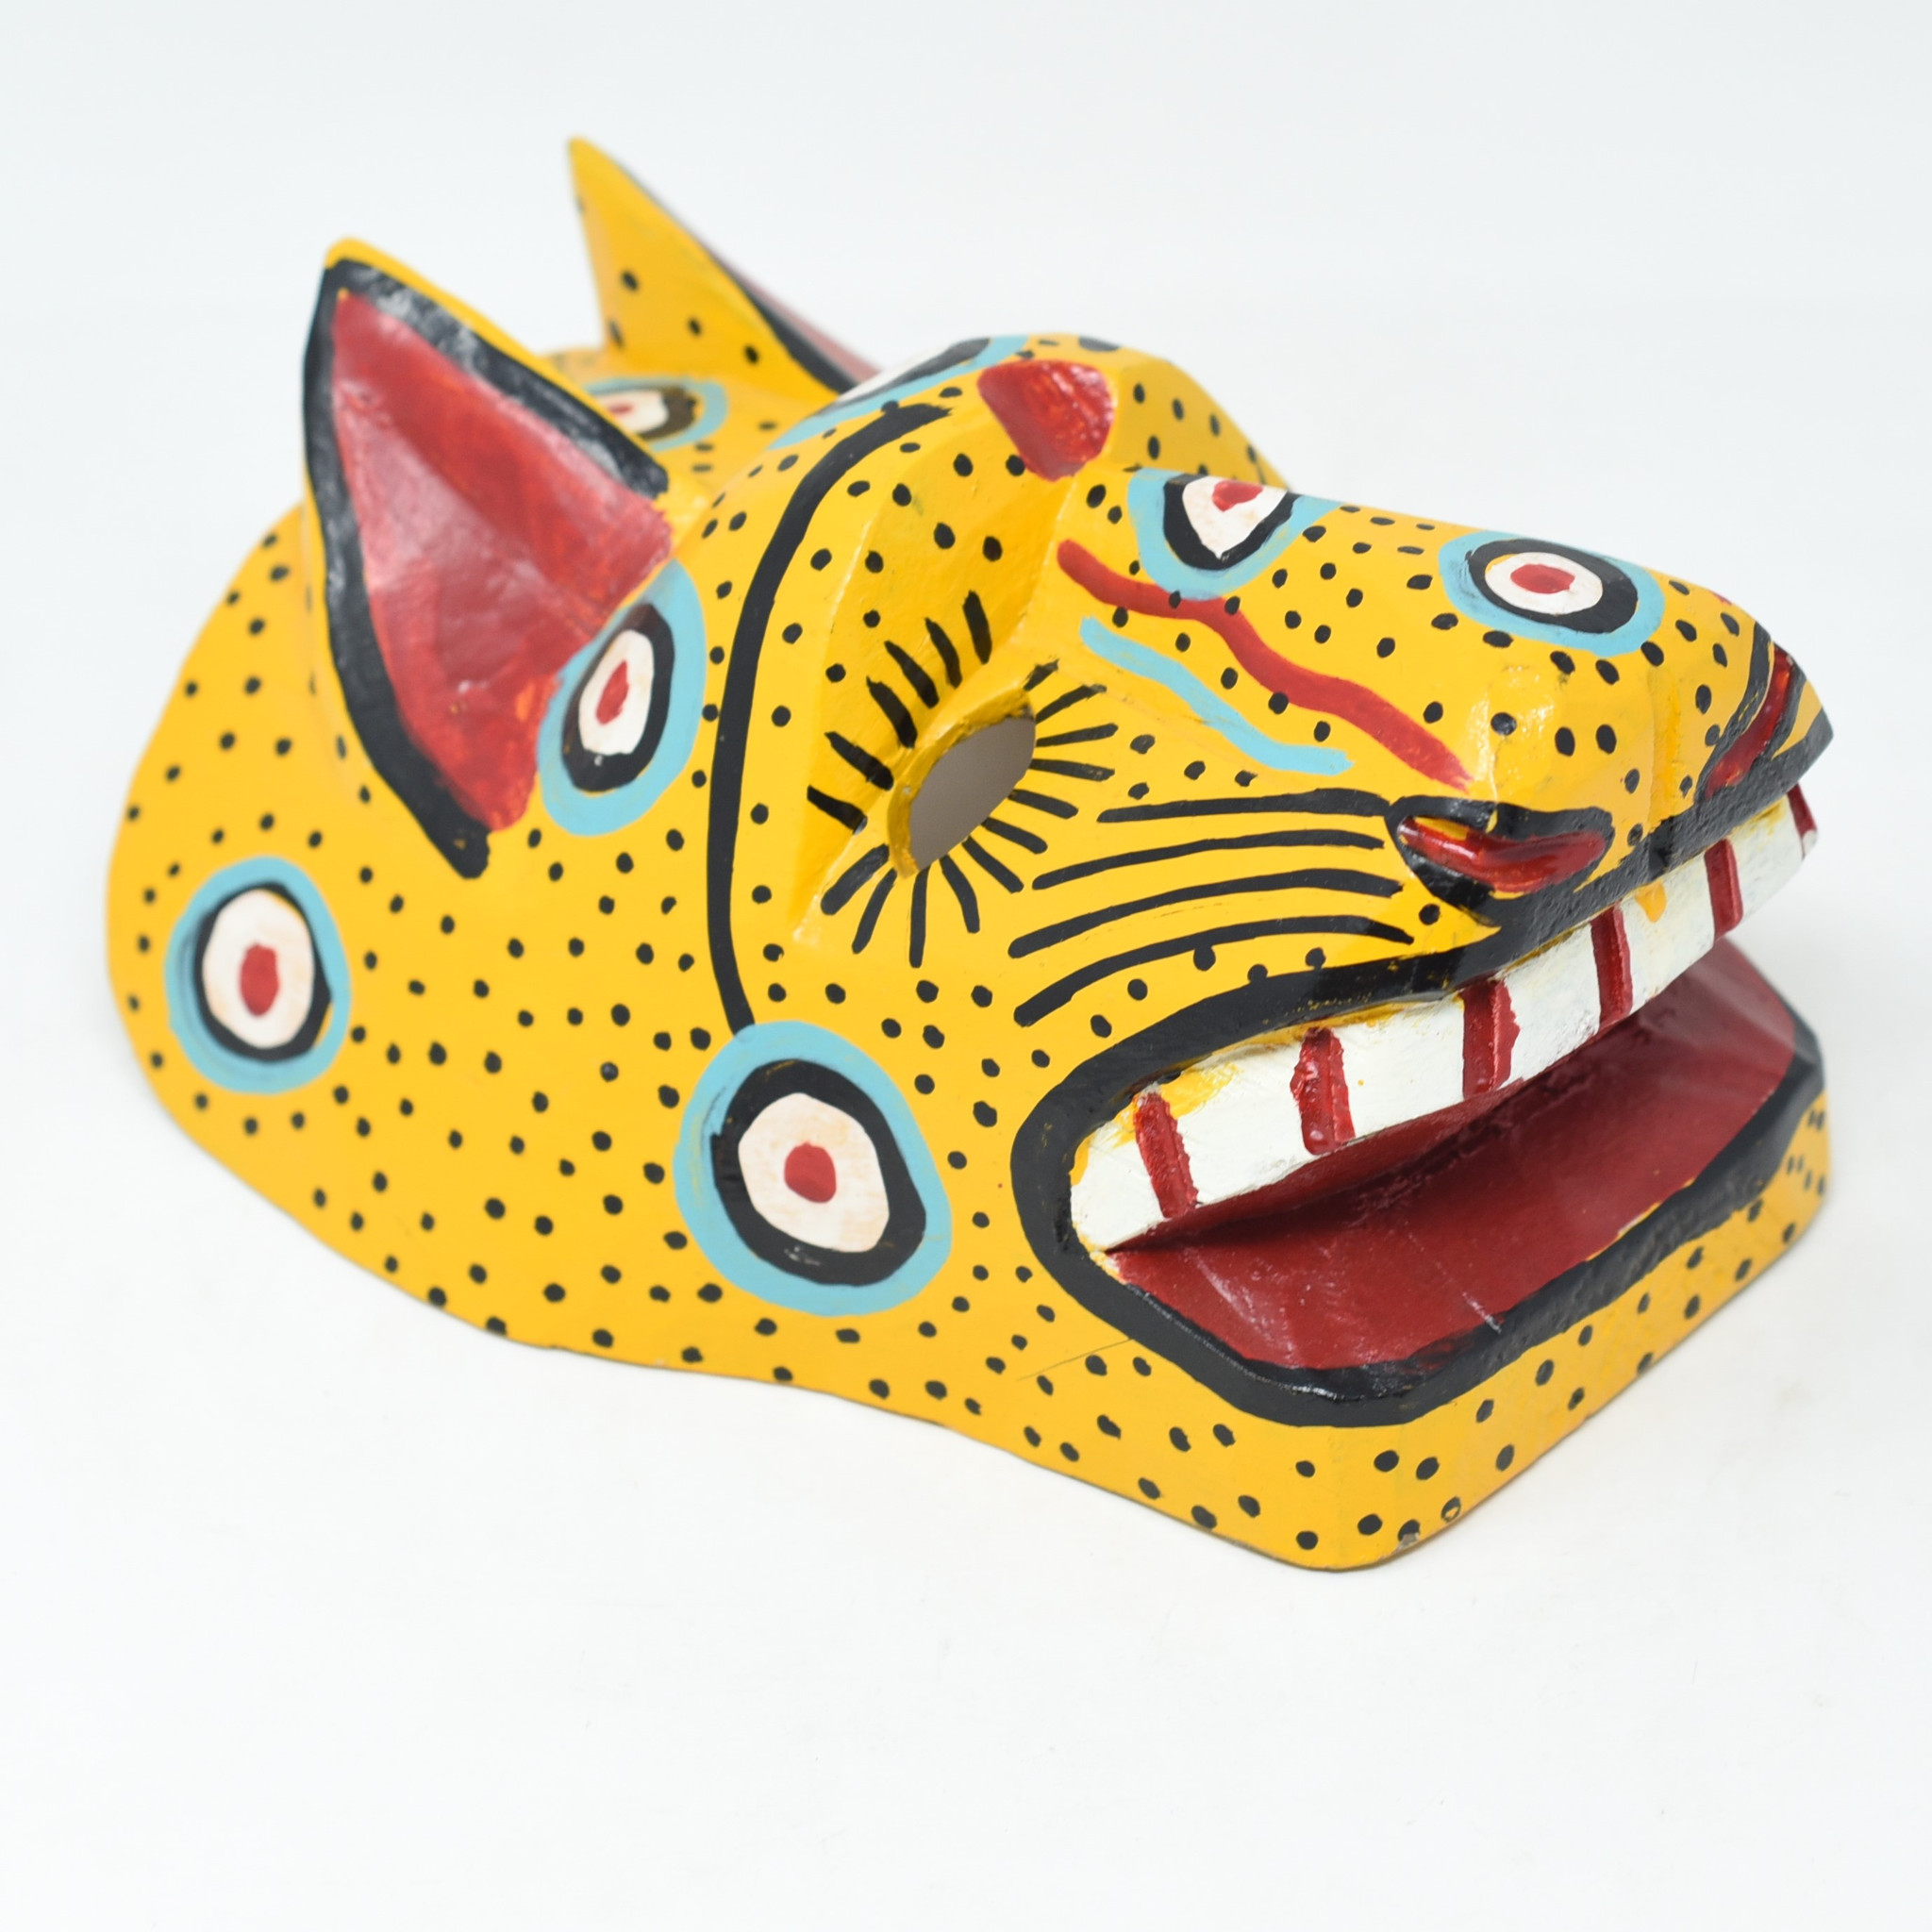 spaniard mask guatemala